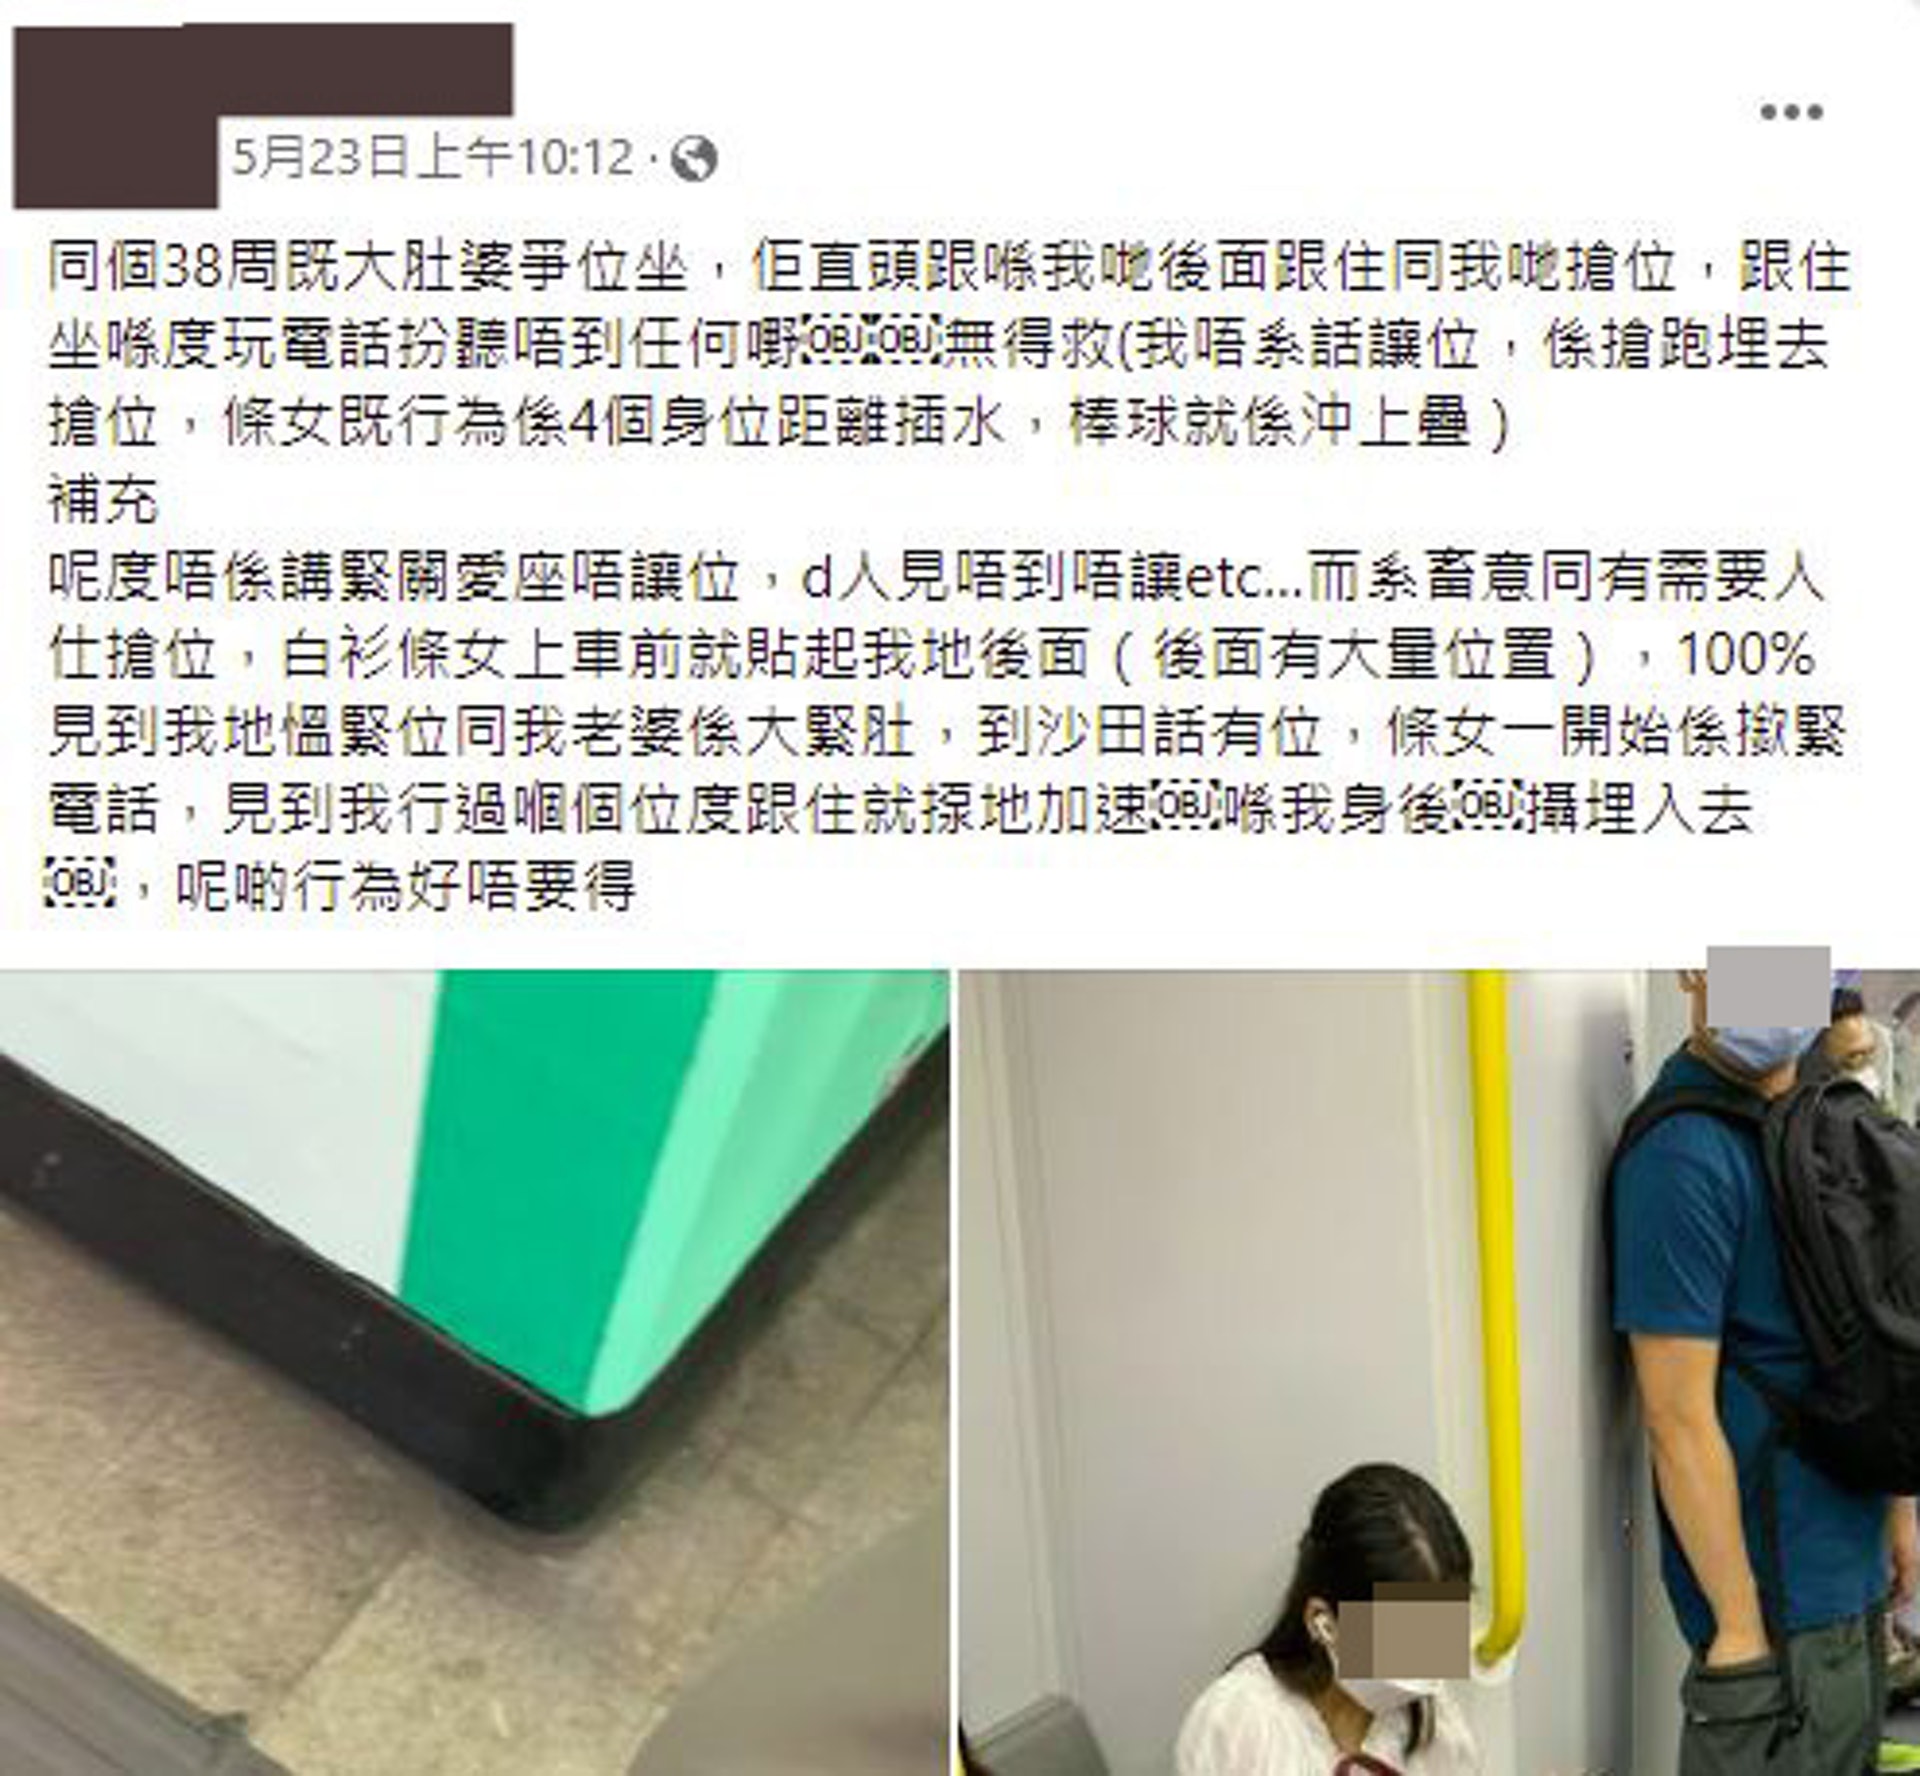 有人夫日前搭港鐵時，其懷孕38周的太太被一名女乘客爭位坐，於是在社交媒體公審該女乘客行為要不得。（Facebook群組「大埔人大埔谷」）